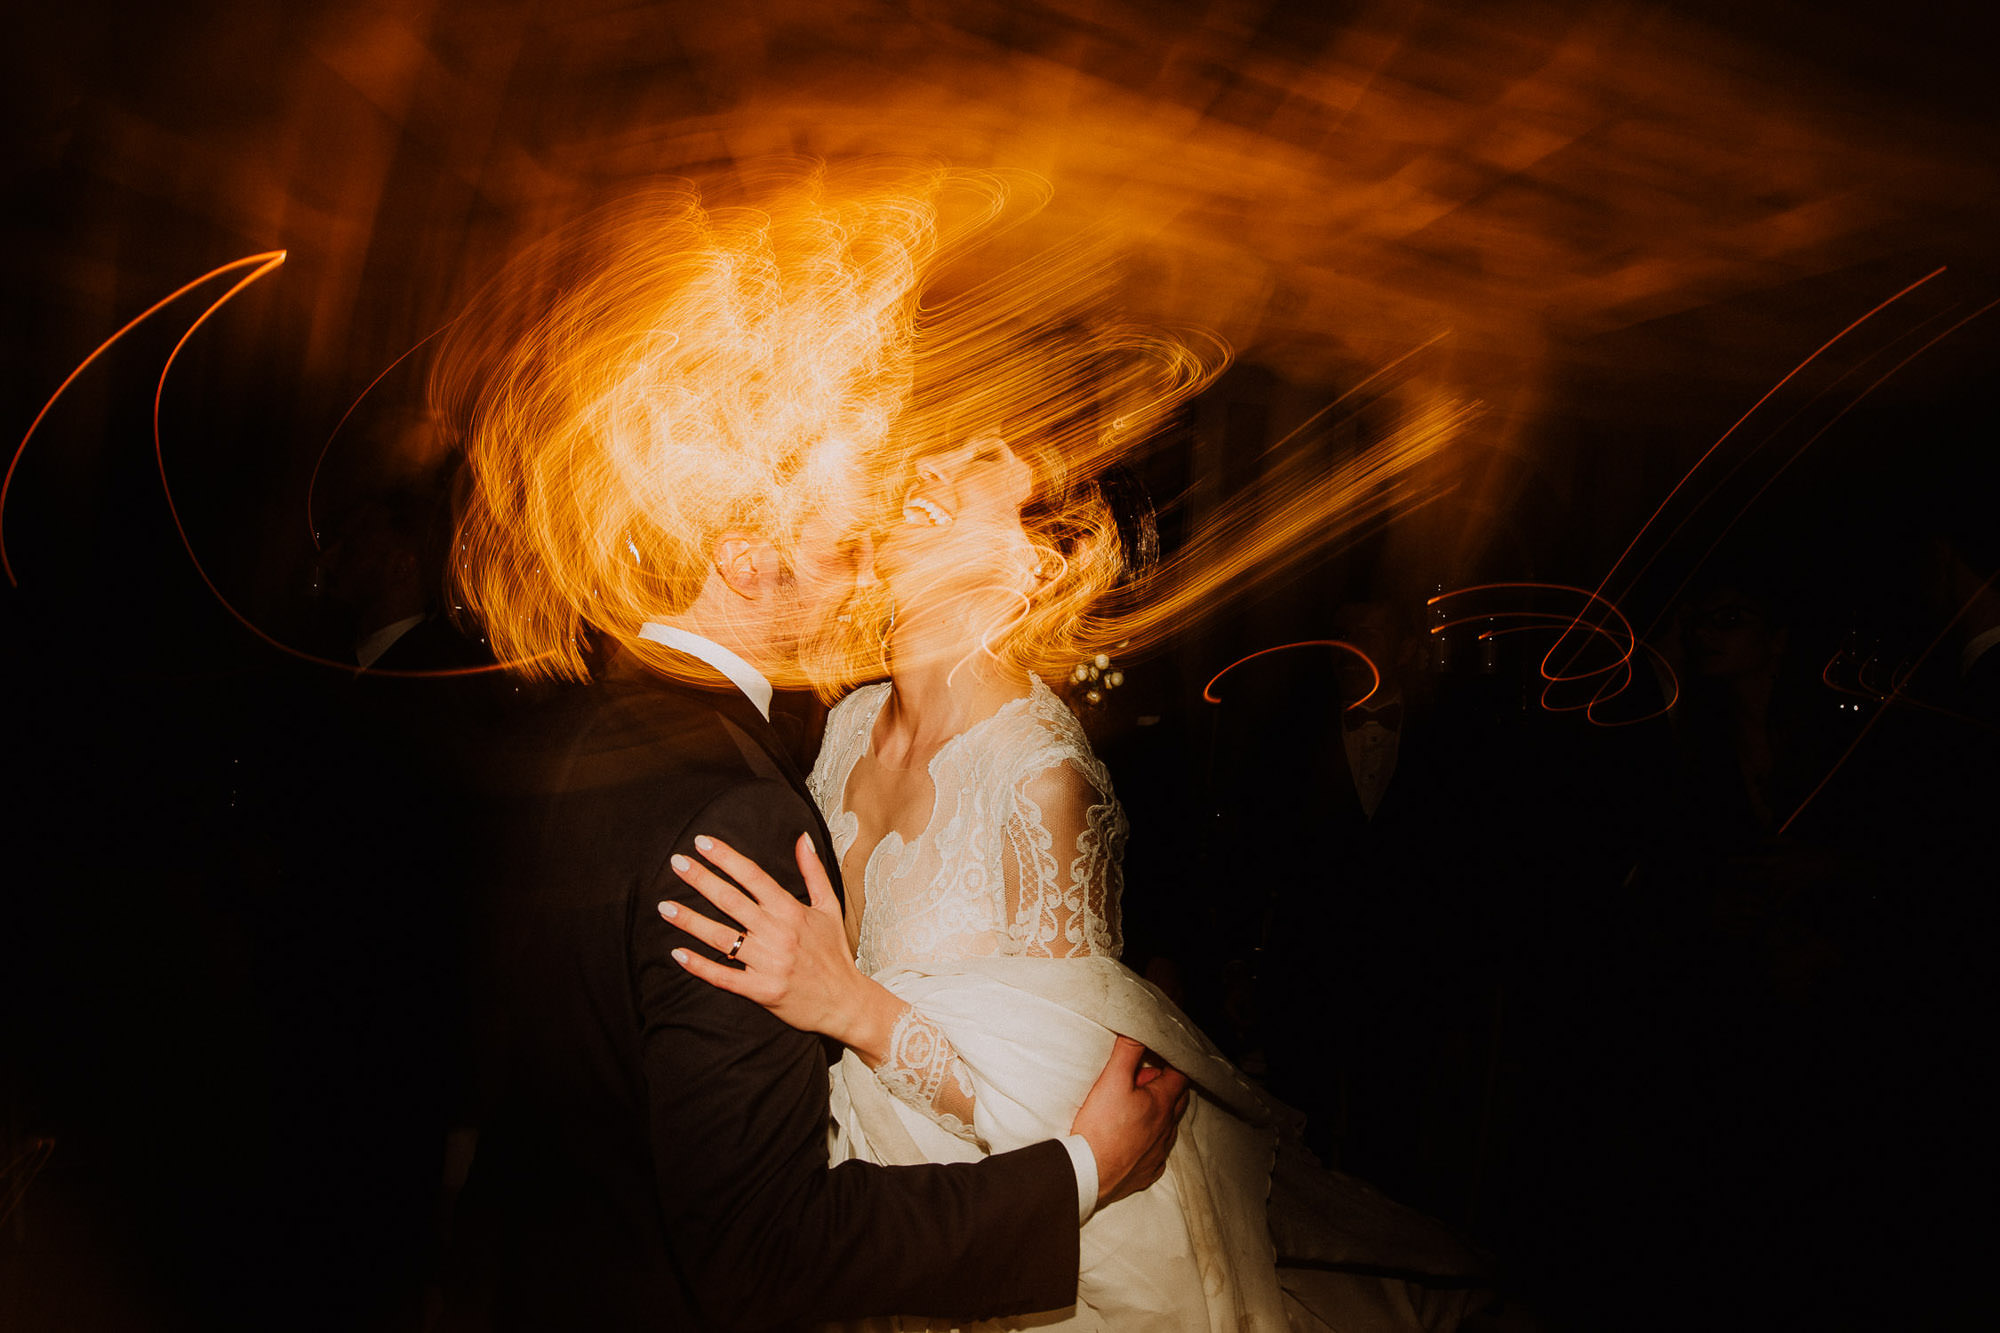 fotografo reportage artistico matrimonio bari taranto lecce ostuni fasano country